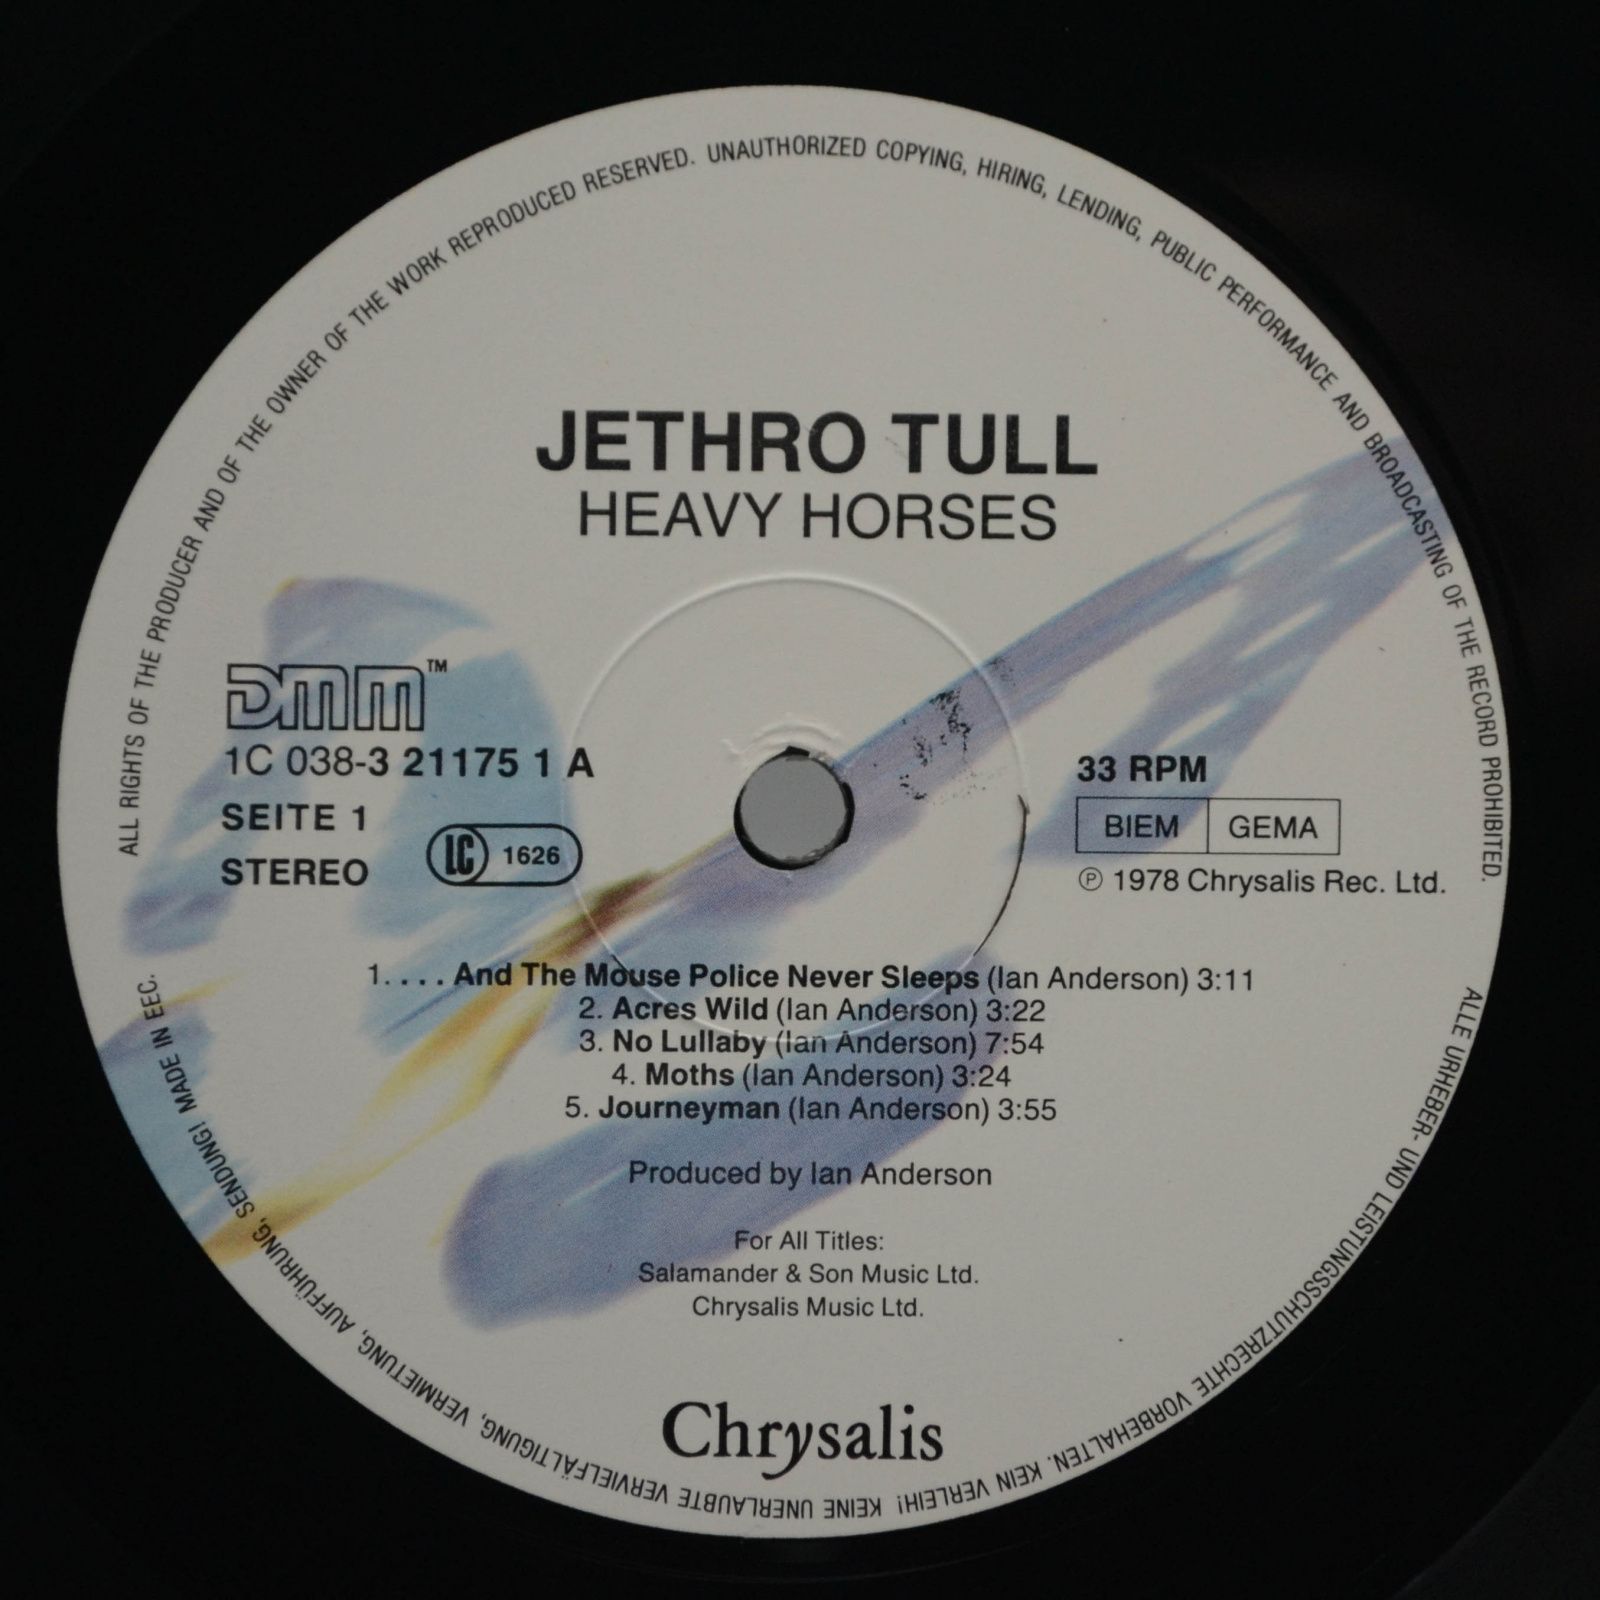 Jethro Tull — Heavy Horses, 1978